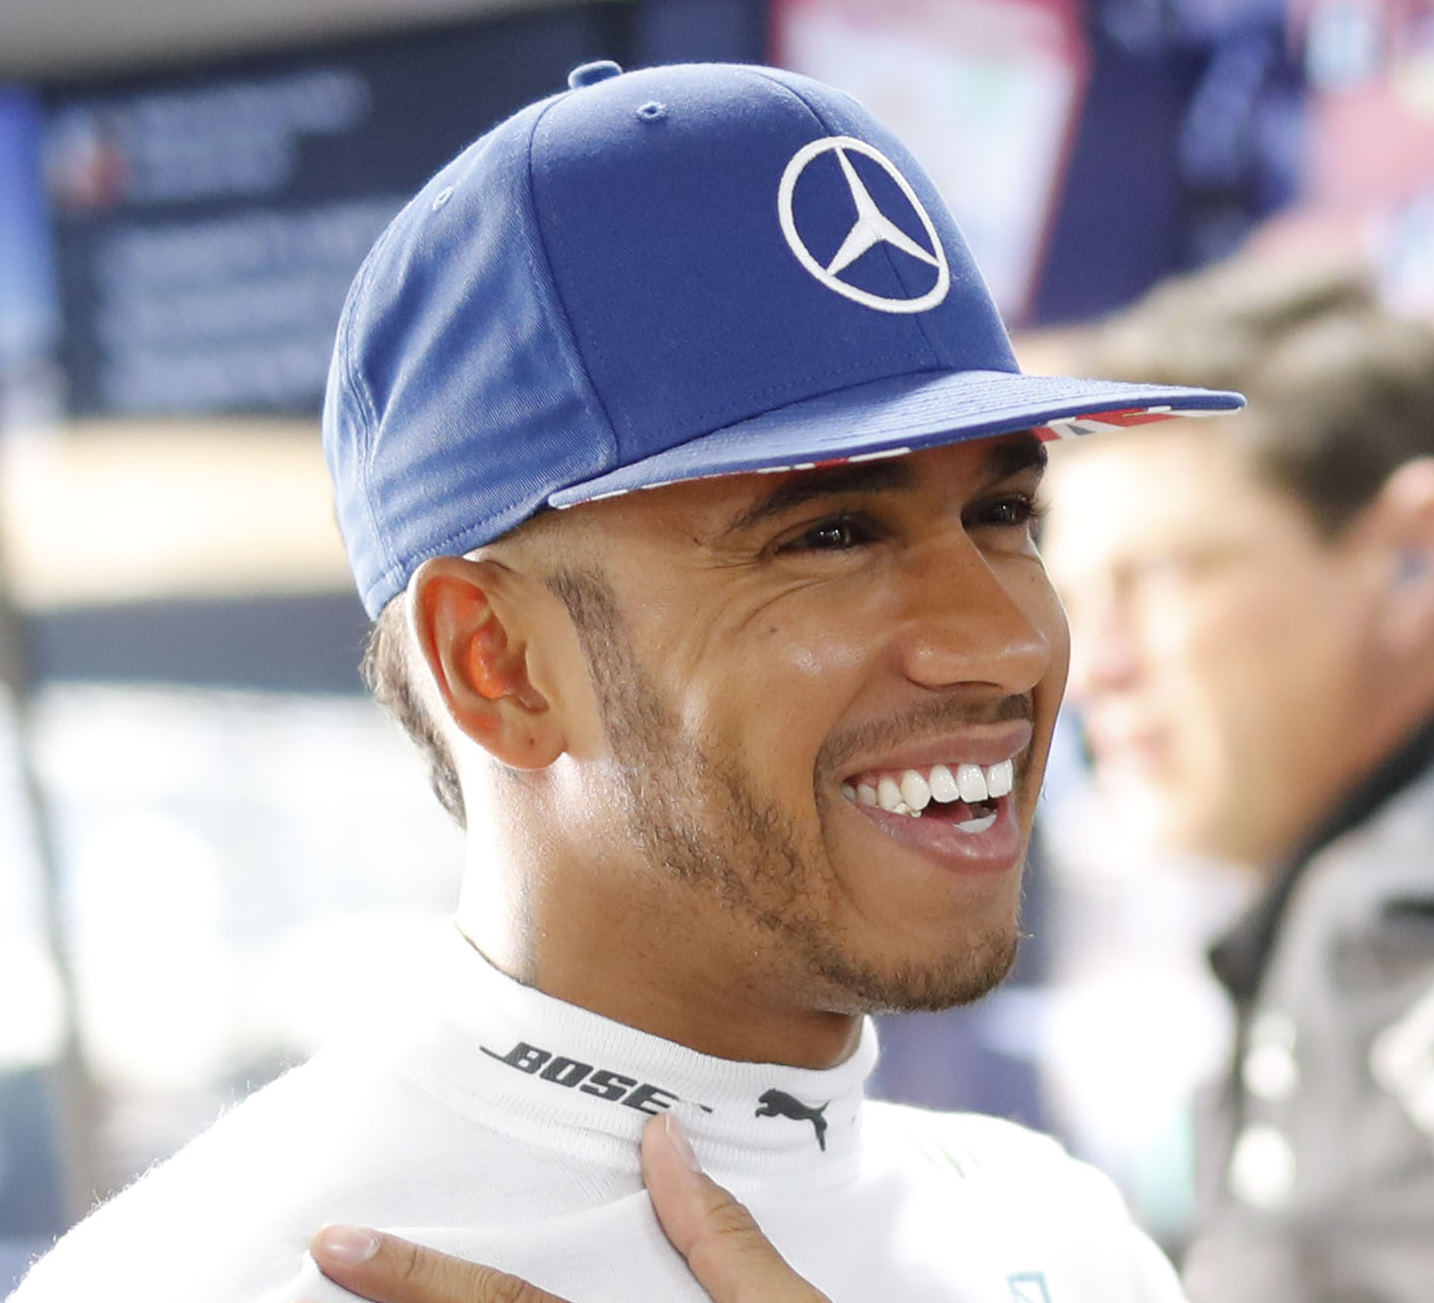 Will Hamilton beat Rosberg again? 